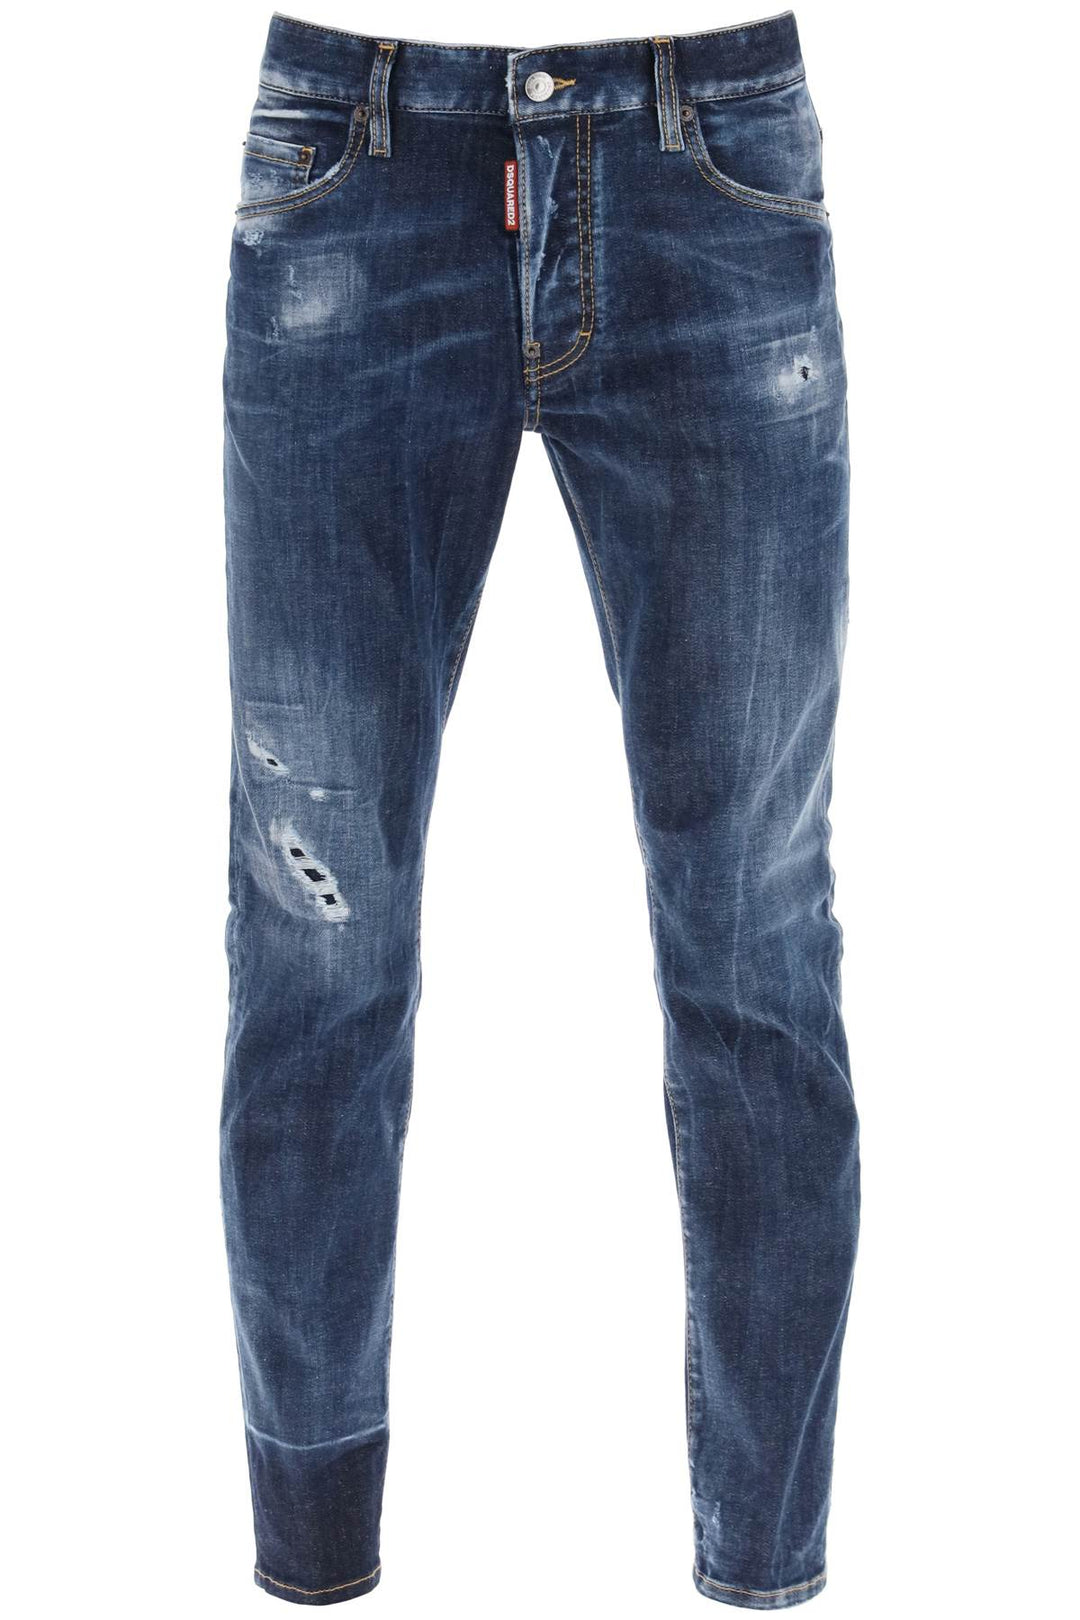 Jeans Skater In Dark Scar Wash - Dsquared2 - Uomo